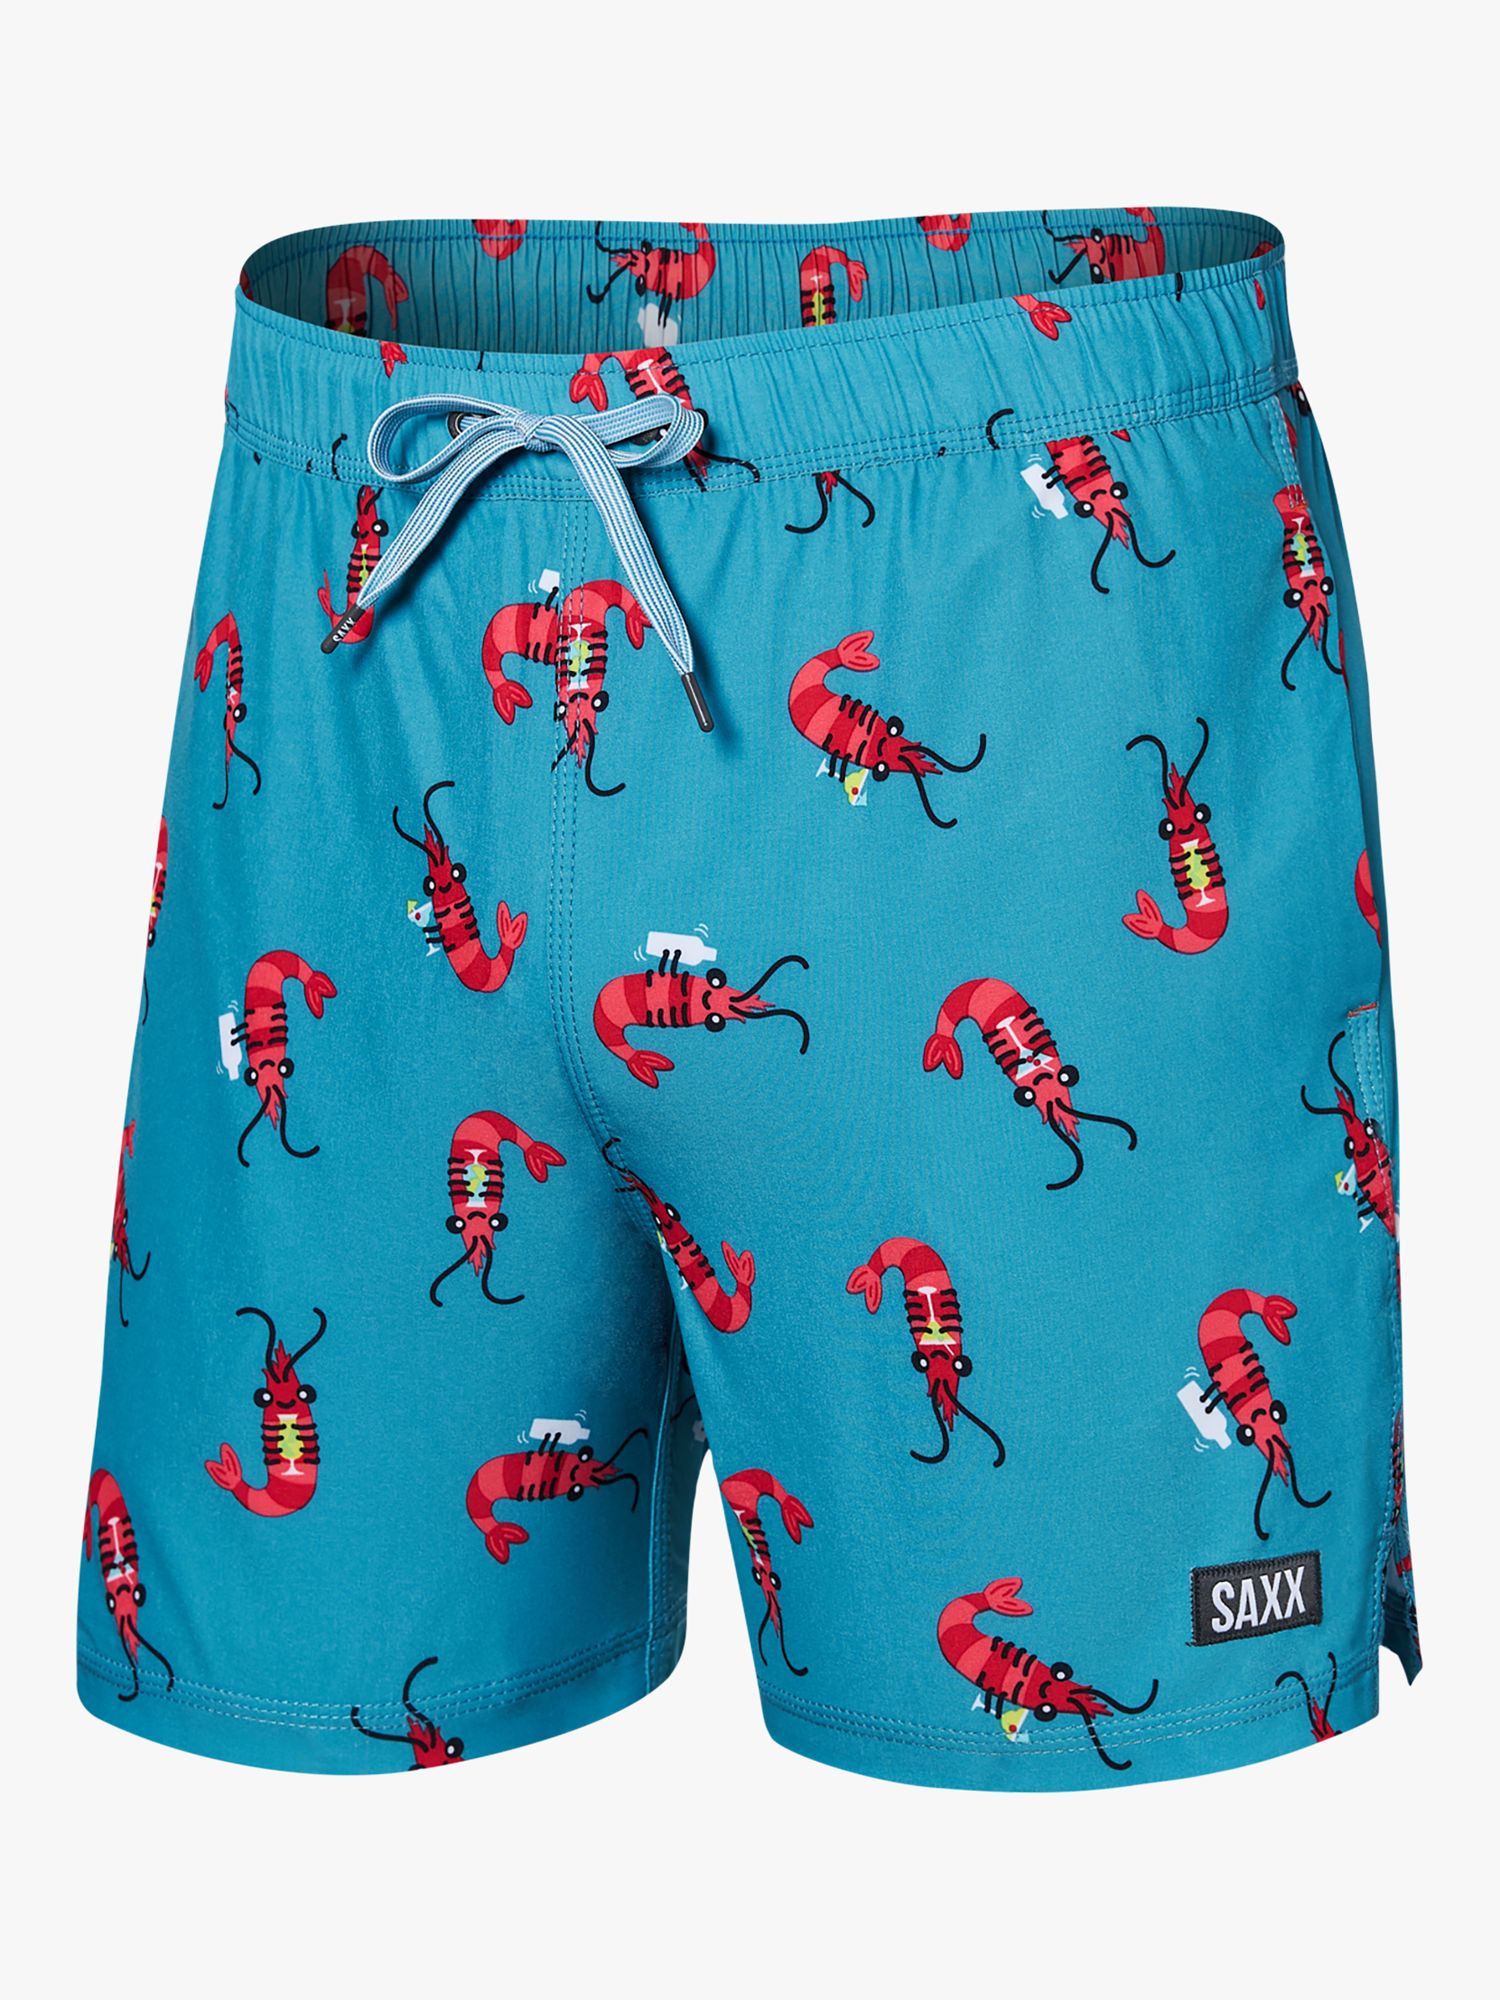 SAXX Oh Buoy 2-in-1 Swim Shorts, Blue/Multi, XL